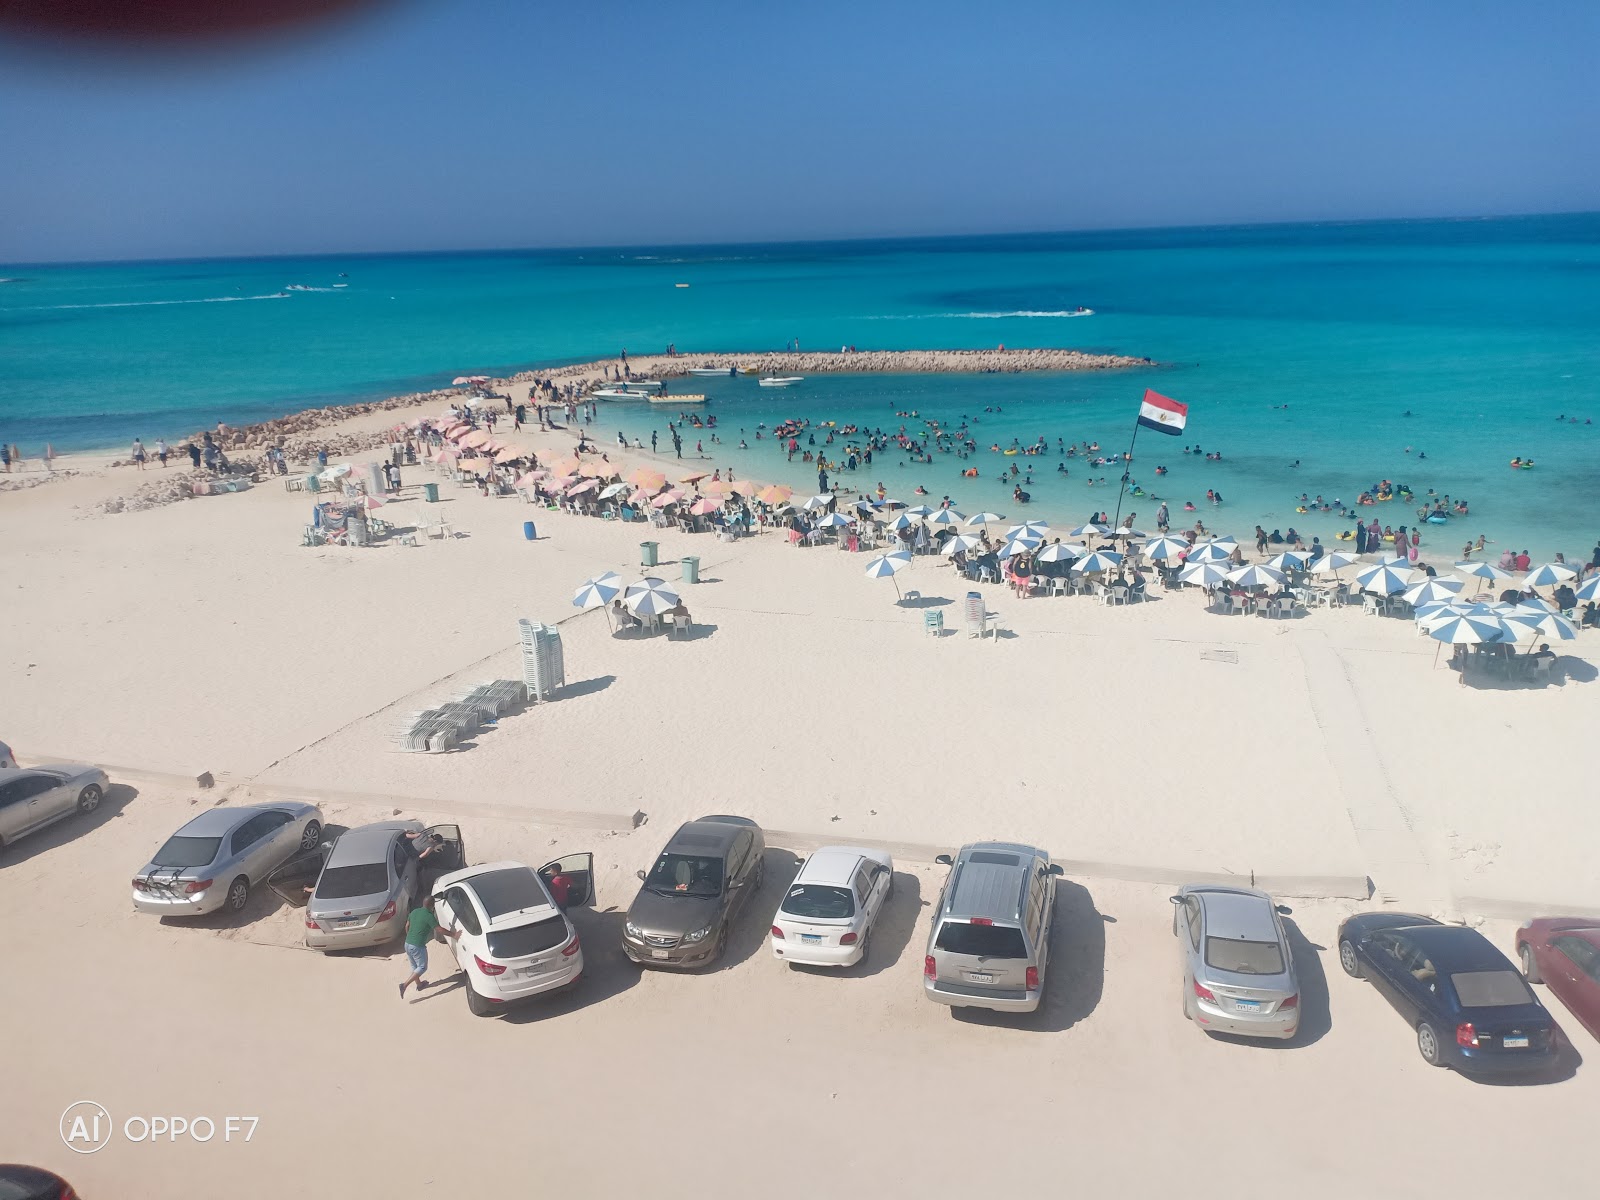 Obayed Matrouh Beach'in fotoğrafı geniş plaj ile birlikte